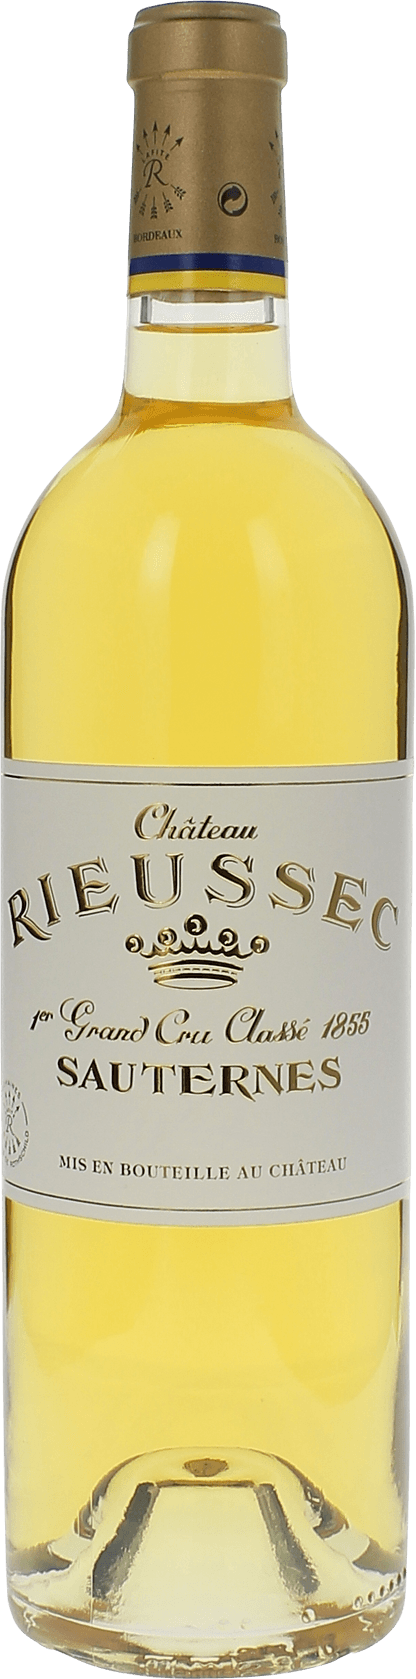 Rieussec 1986 1er cru Sauternes, Bordeaux blanc